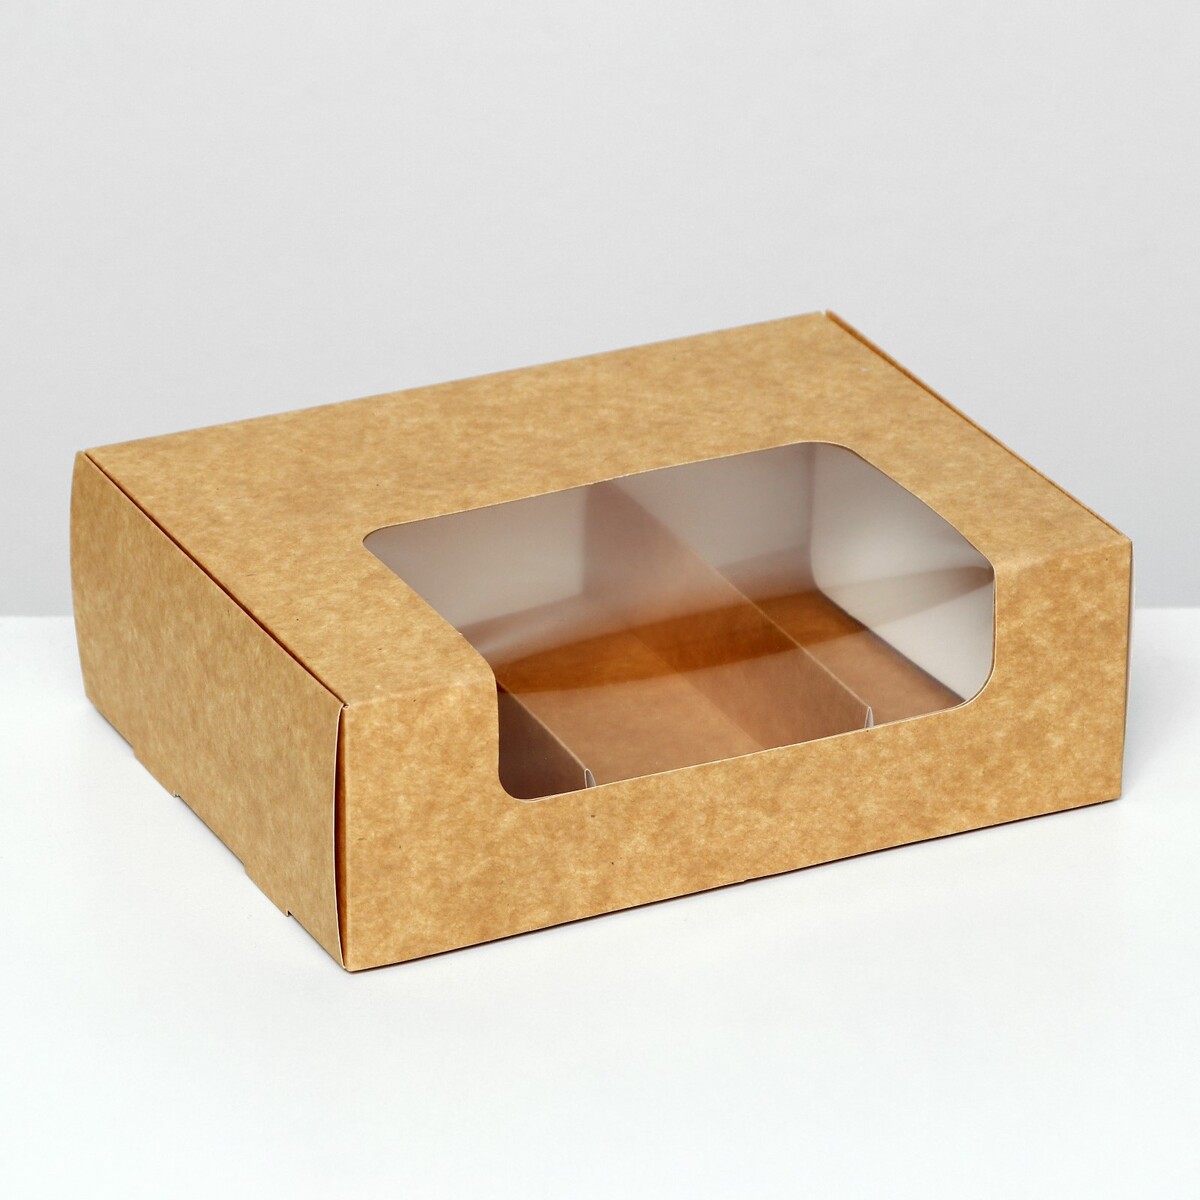 Коробка складная, под 3 эклера, крафт, 20 x 15 x 6 см коробка складная под 4 конфеты с окном крафт 12 6 х 12 6 х 3 5 см